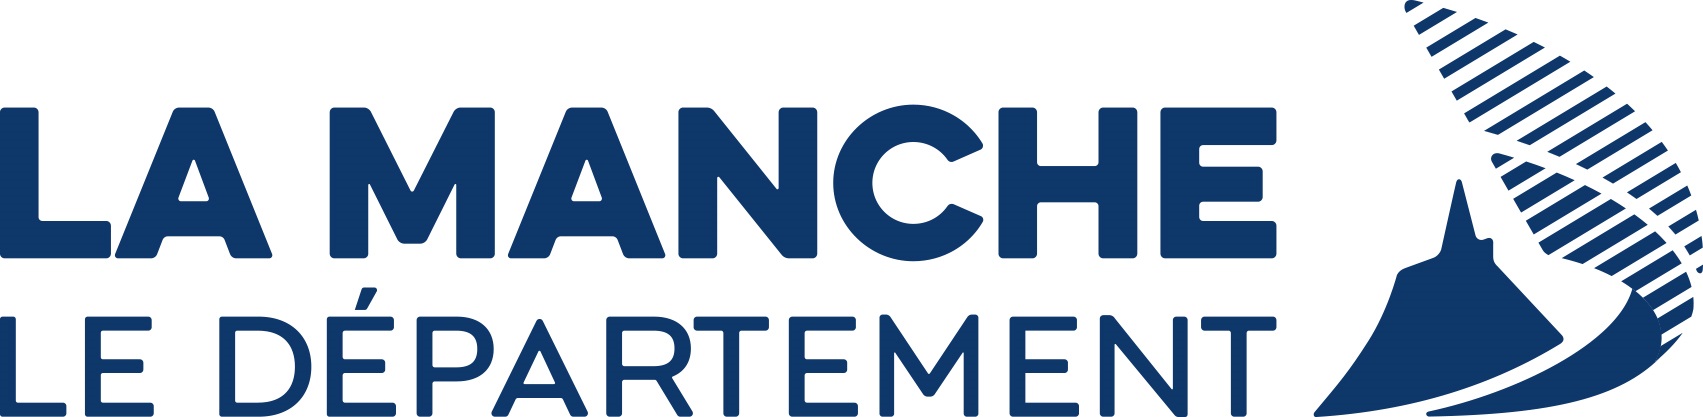 LA MANCHE 2021 logo horizontal format jpg